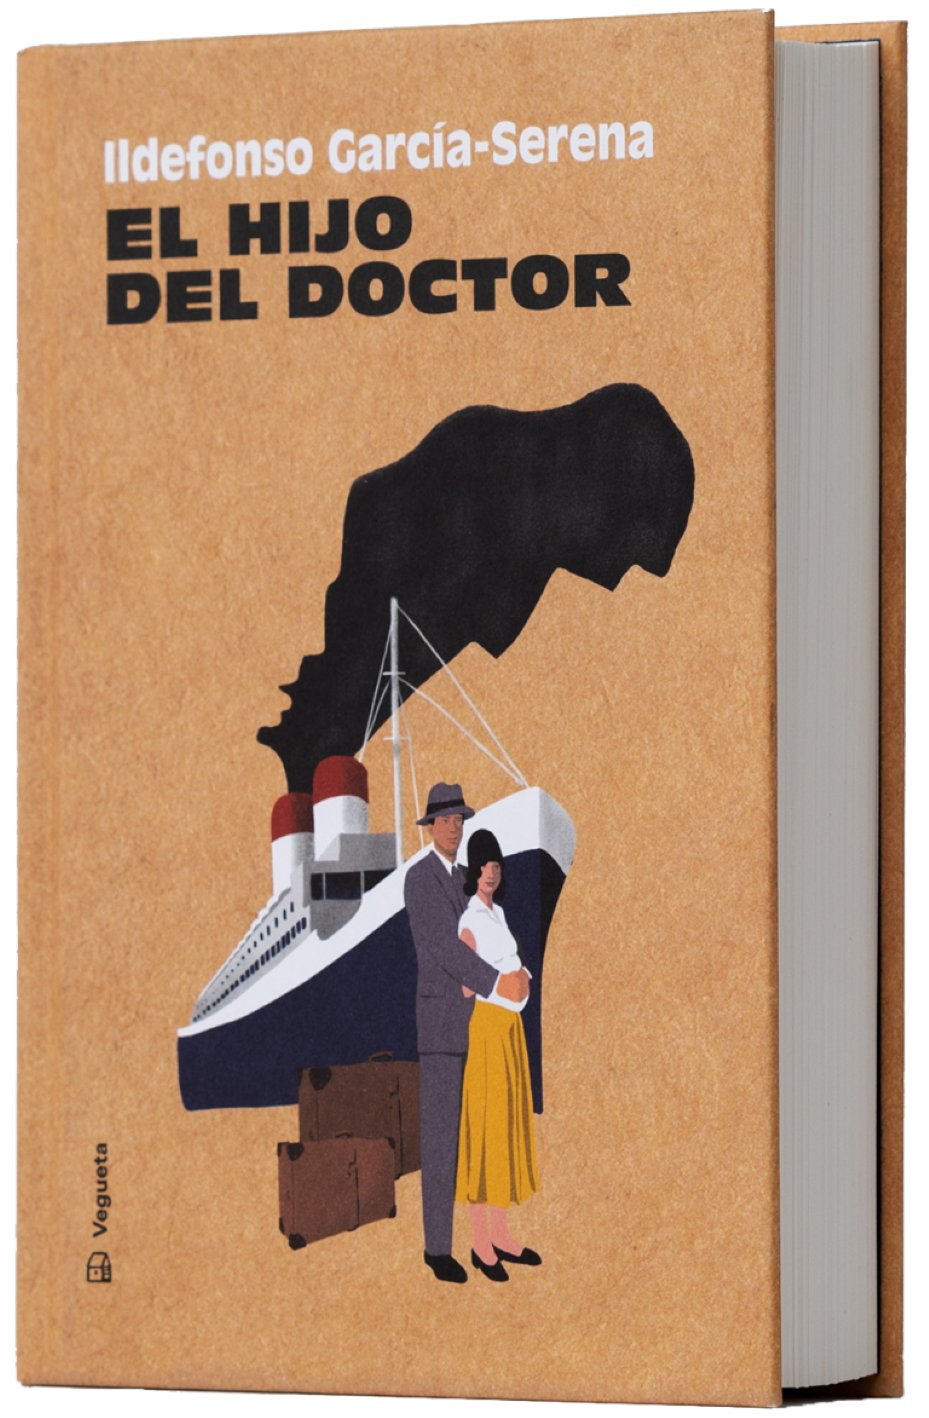 Ildefonso García-Serena, 'El hijo del doctor'. Vegueta Ed., 416 p., 22,50 €.